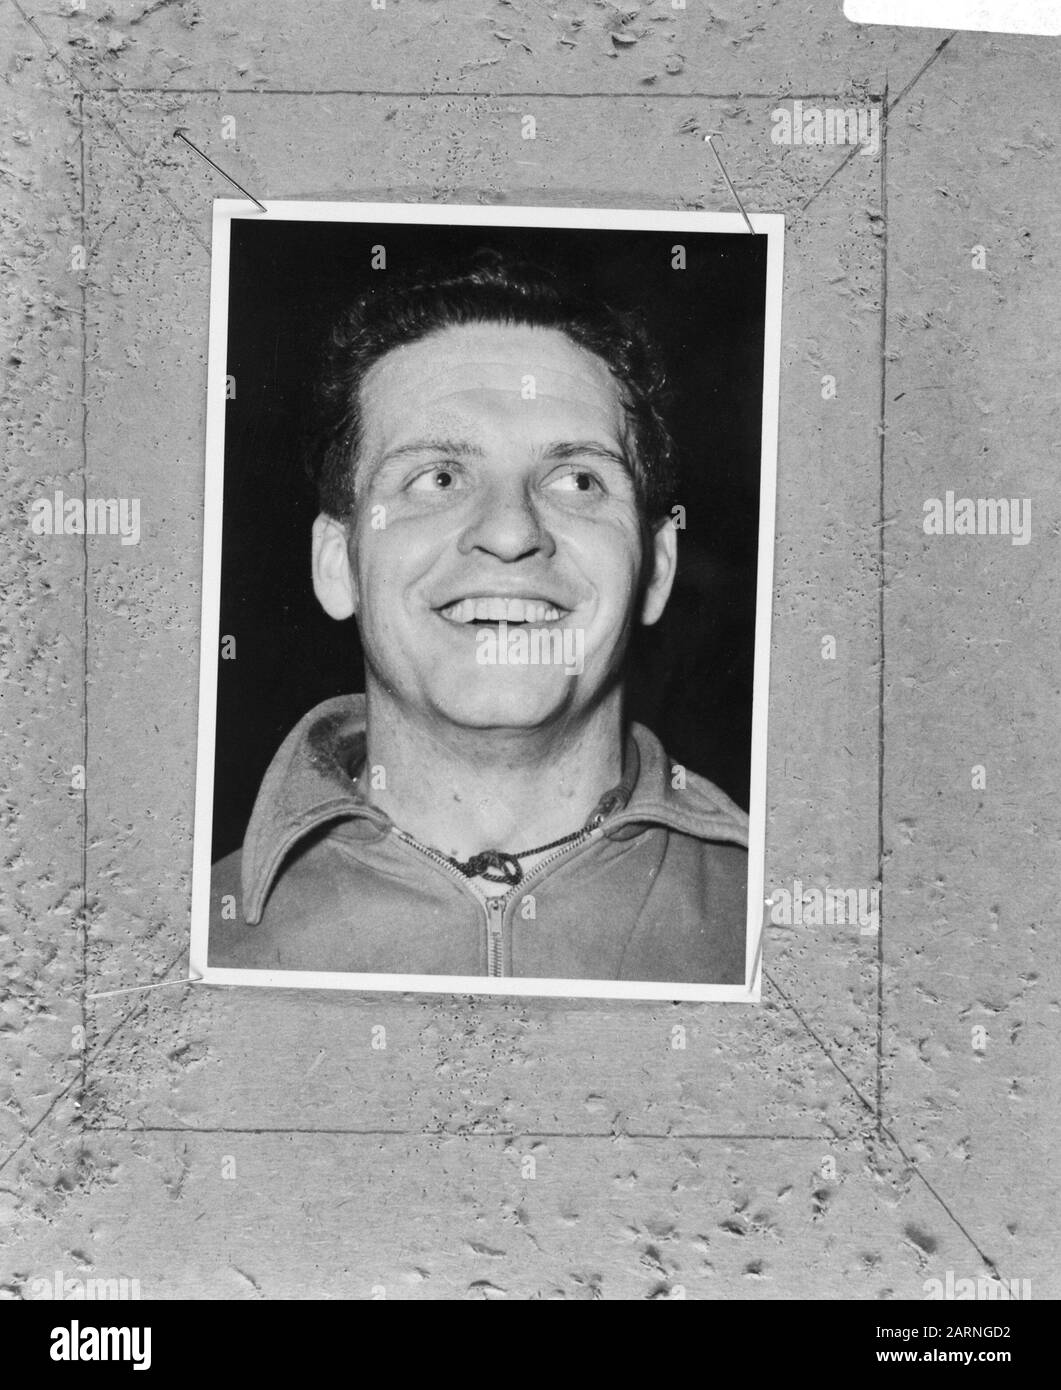 Vic Mees, belgischer Fußballer (alt) Datum: 31. Mai 1968 Schlagwörter: Sport, Fußballspieler Stockfoto